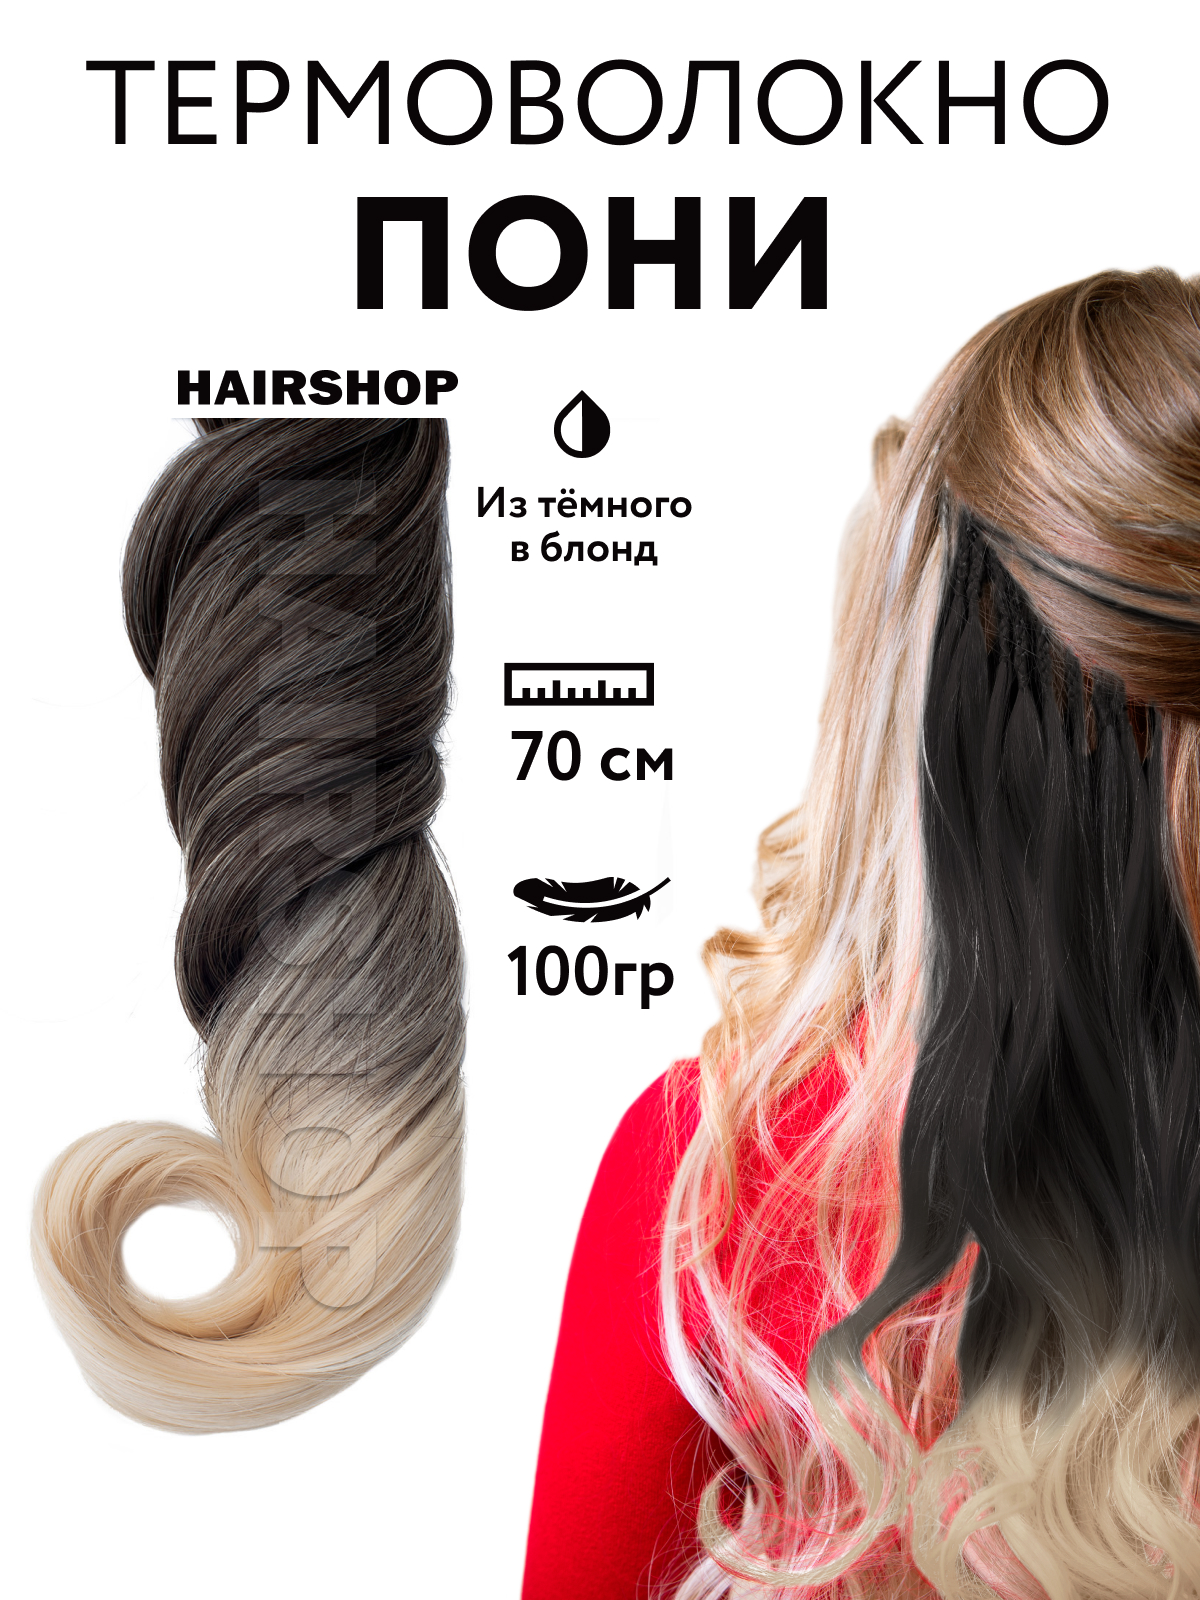 Канекалон HAIRSHOP Пони HairUp для точечного афронаращивания Из темного в блонд 1,4м